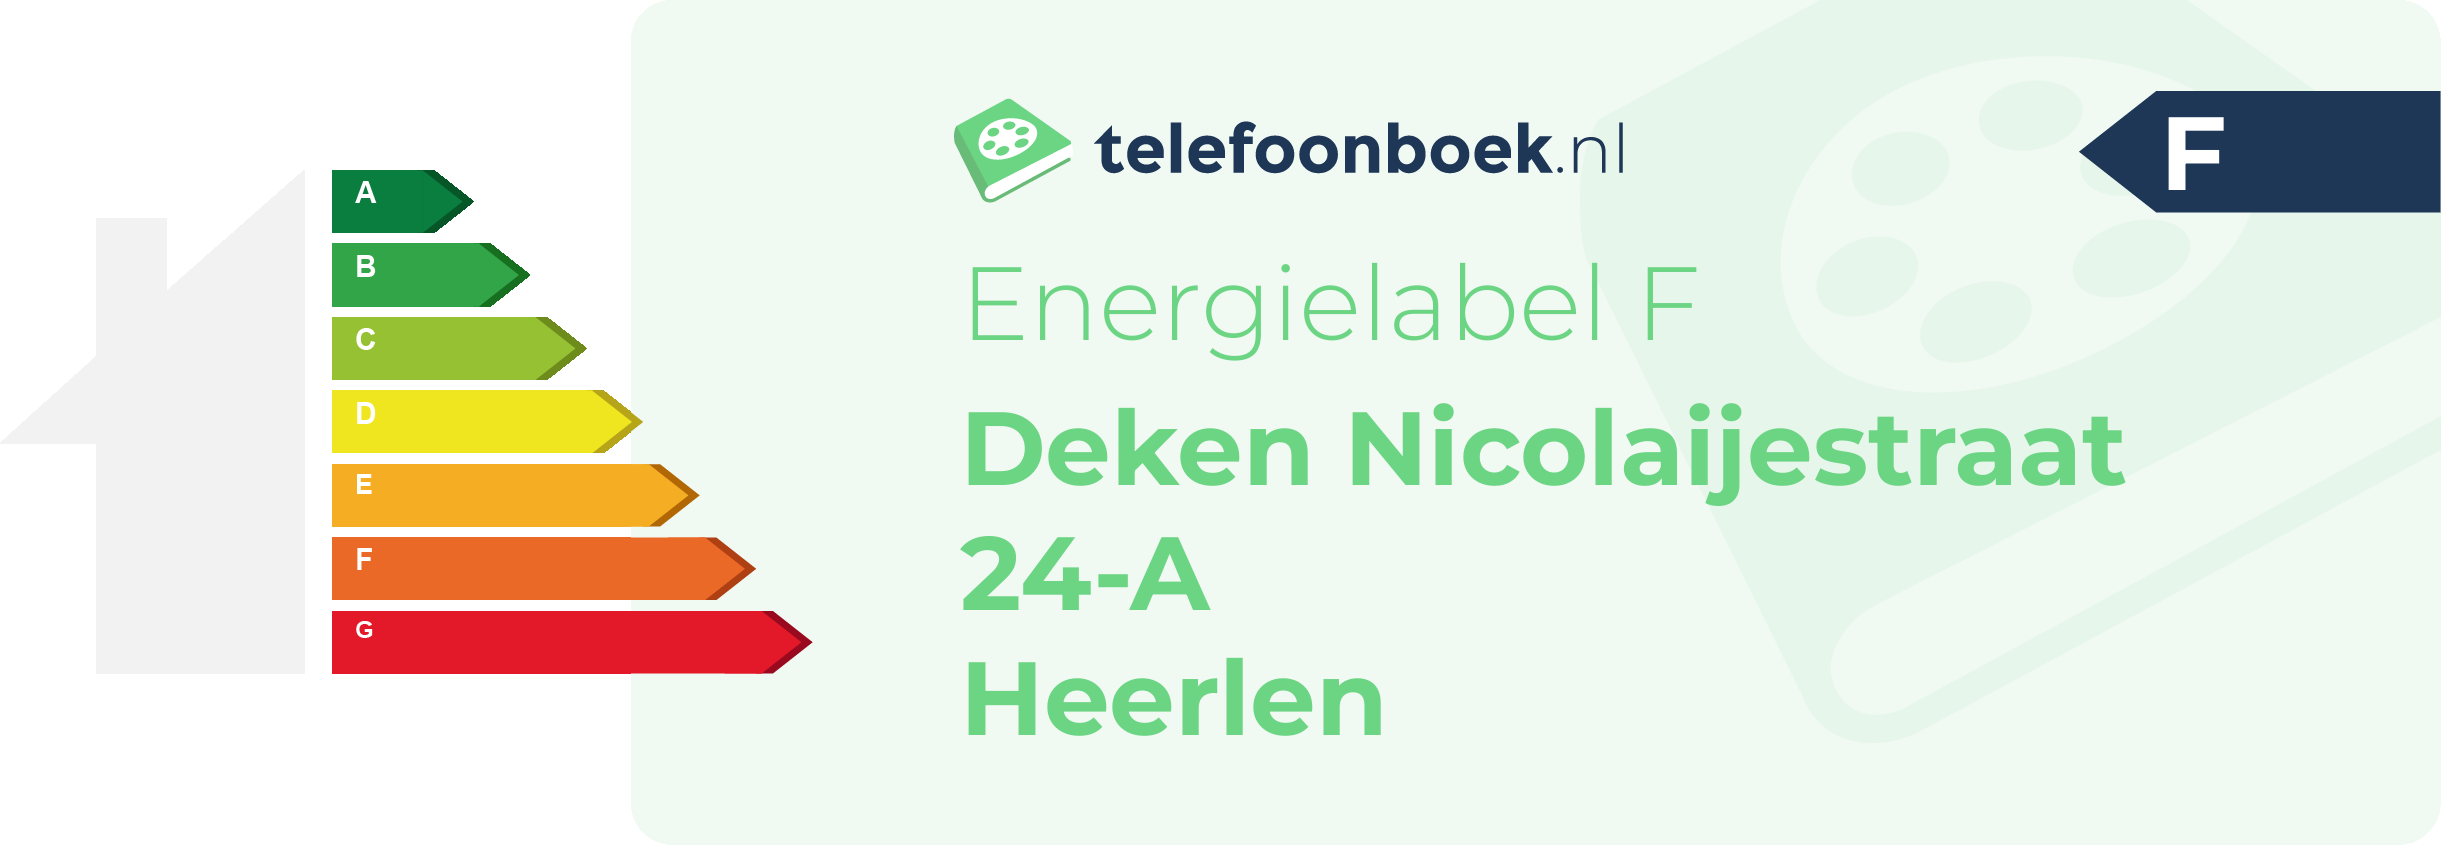 Energielabel Deken Nicolaijestraat 24-A Heerlen